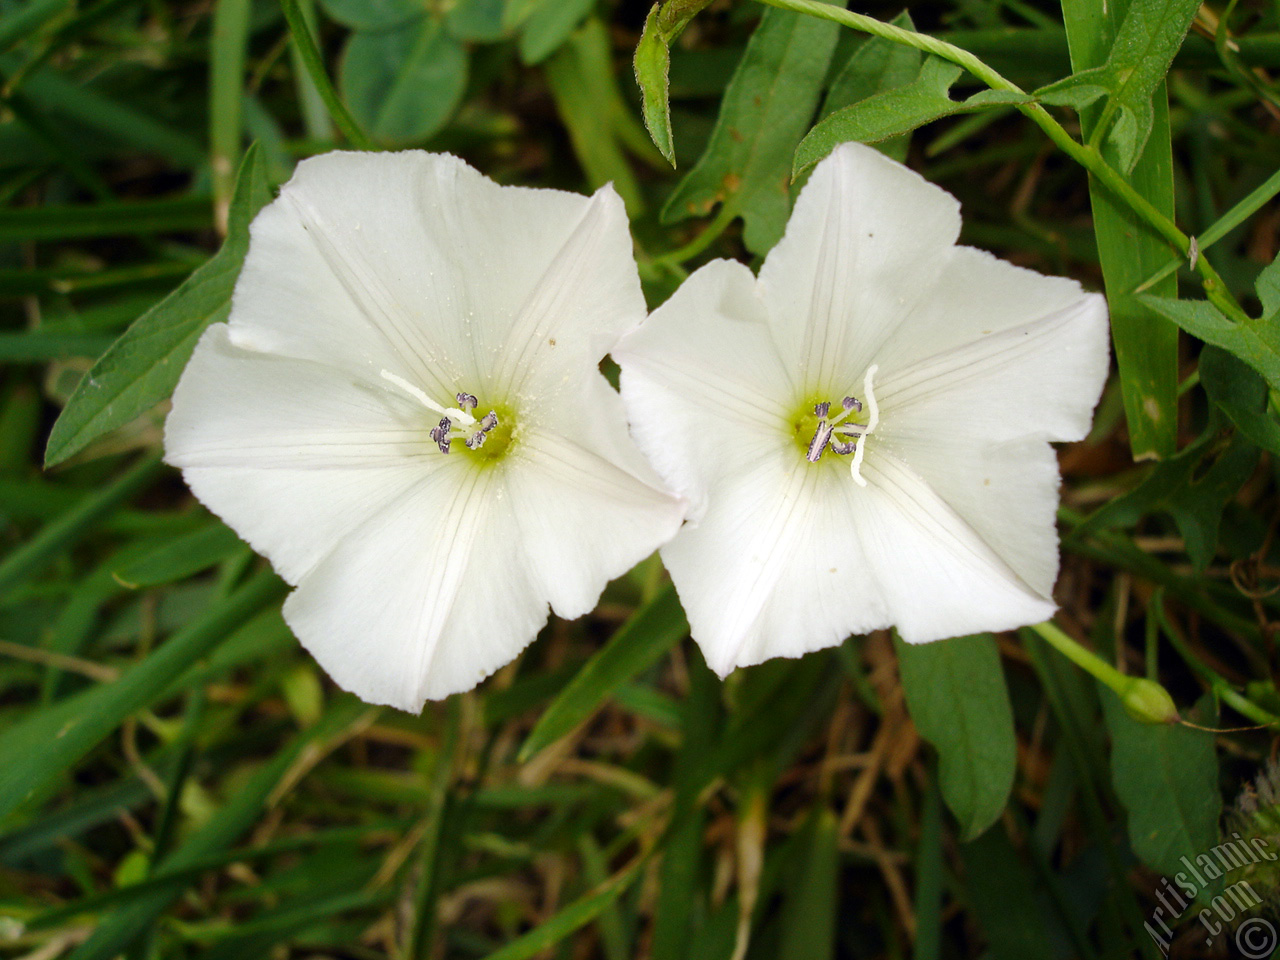 White Morning Glory flower.
